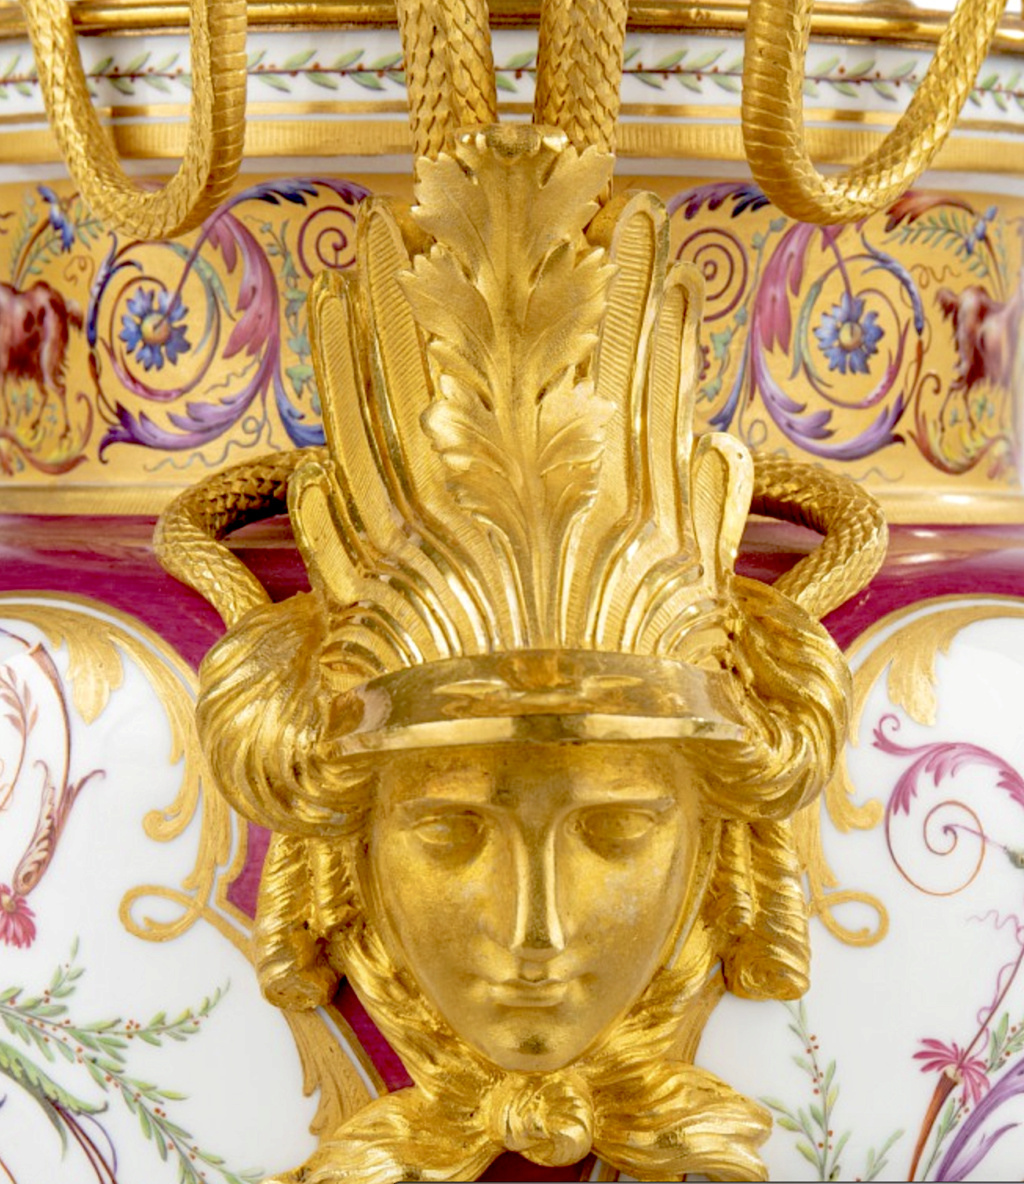 Les services en porcelaine de Sèvres de Louis XVI Capt4186